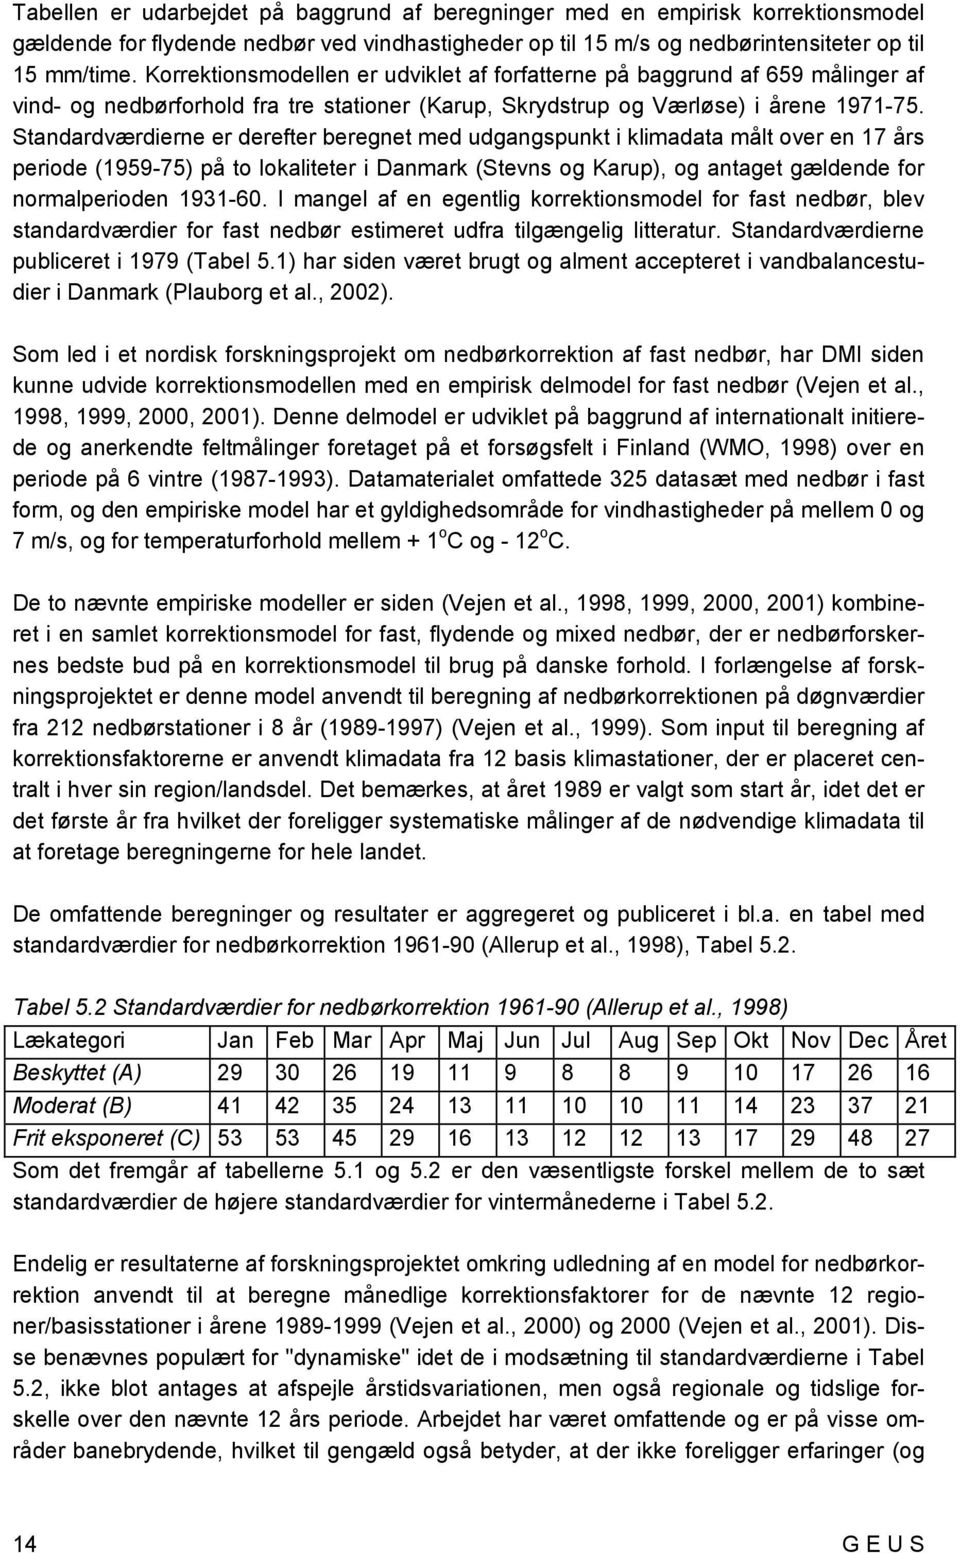 Standardværdierne er derefter beregnet med udgangspunkt i klimadata målt over en 7 års periode (959-75) på to lokaliteter i Danmark (Stevns og Karup), og antaget gældende for normalperioden 93-60.